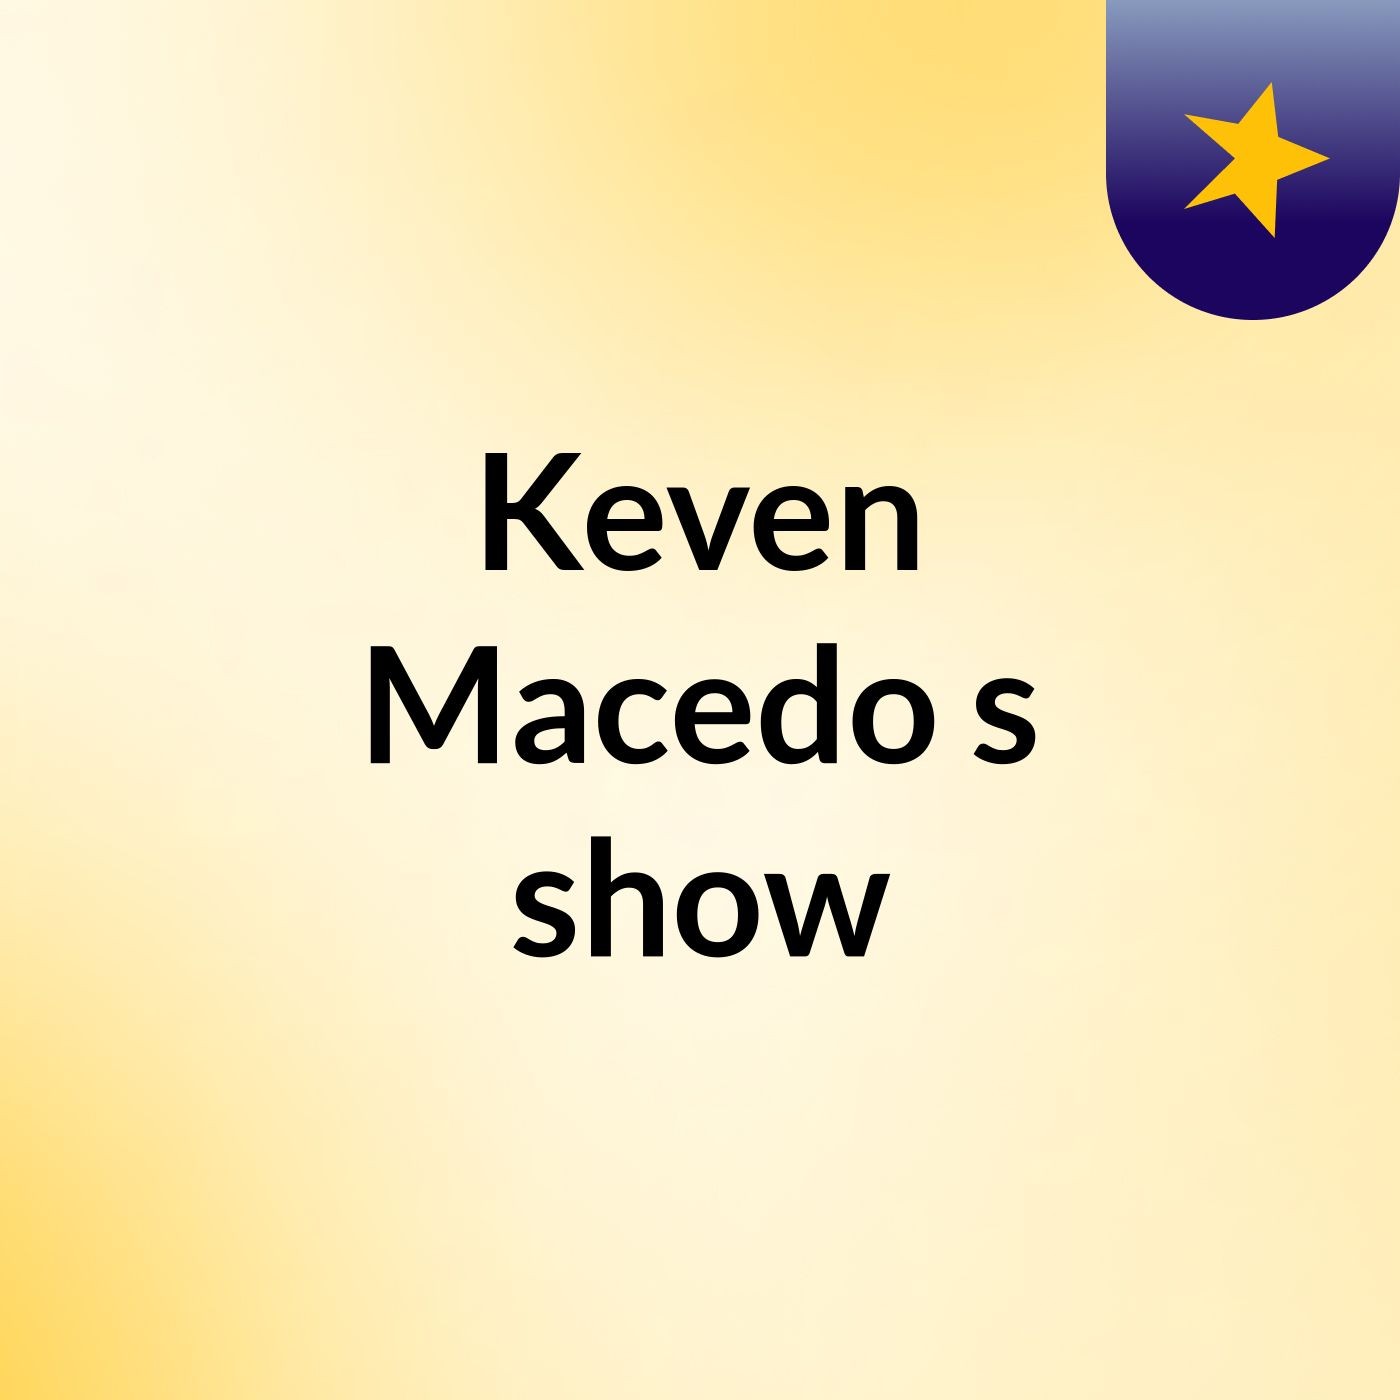 Keven Macedo's show